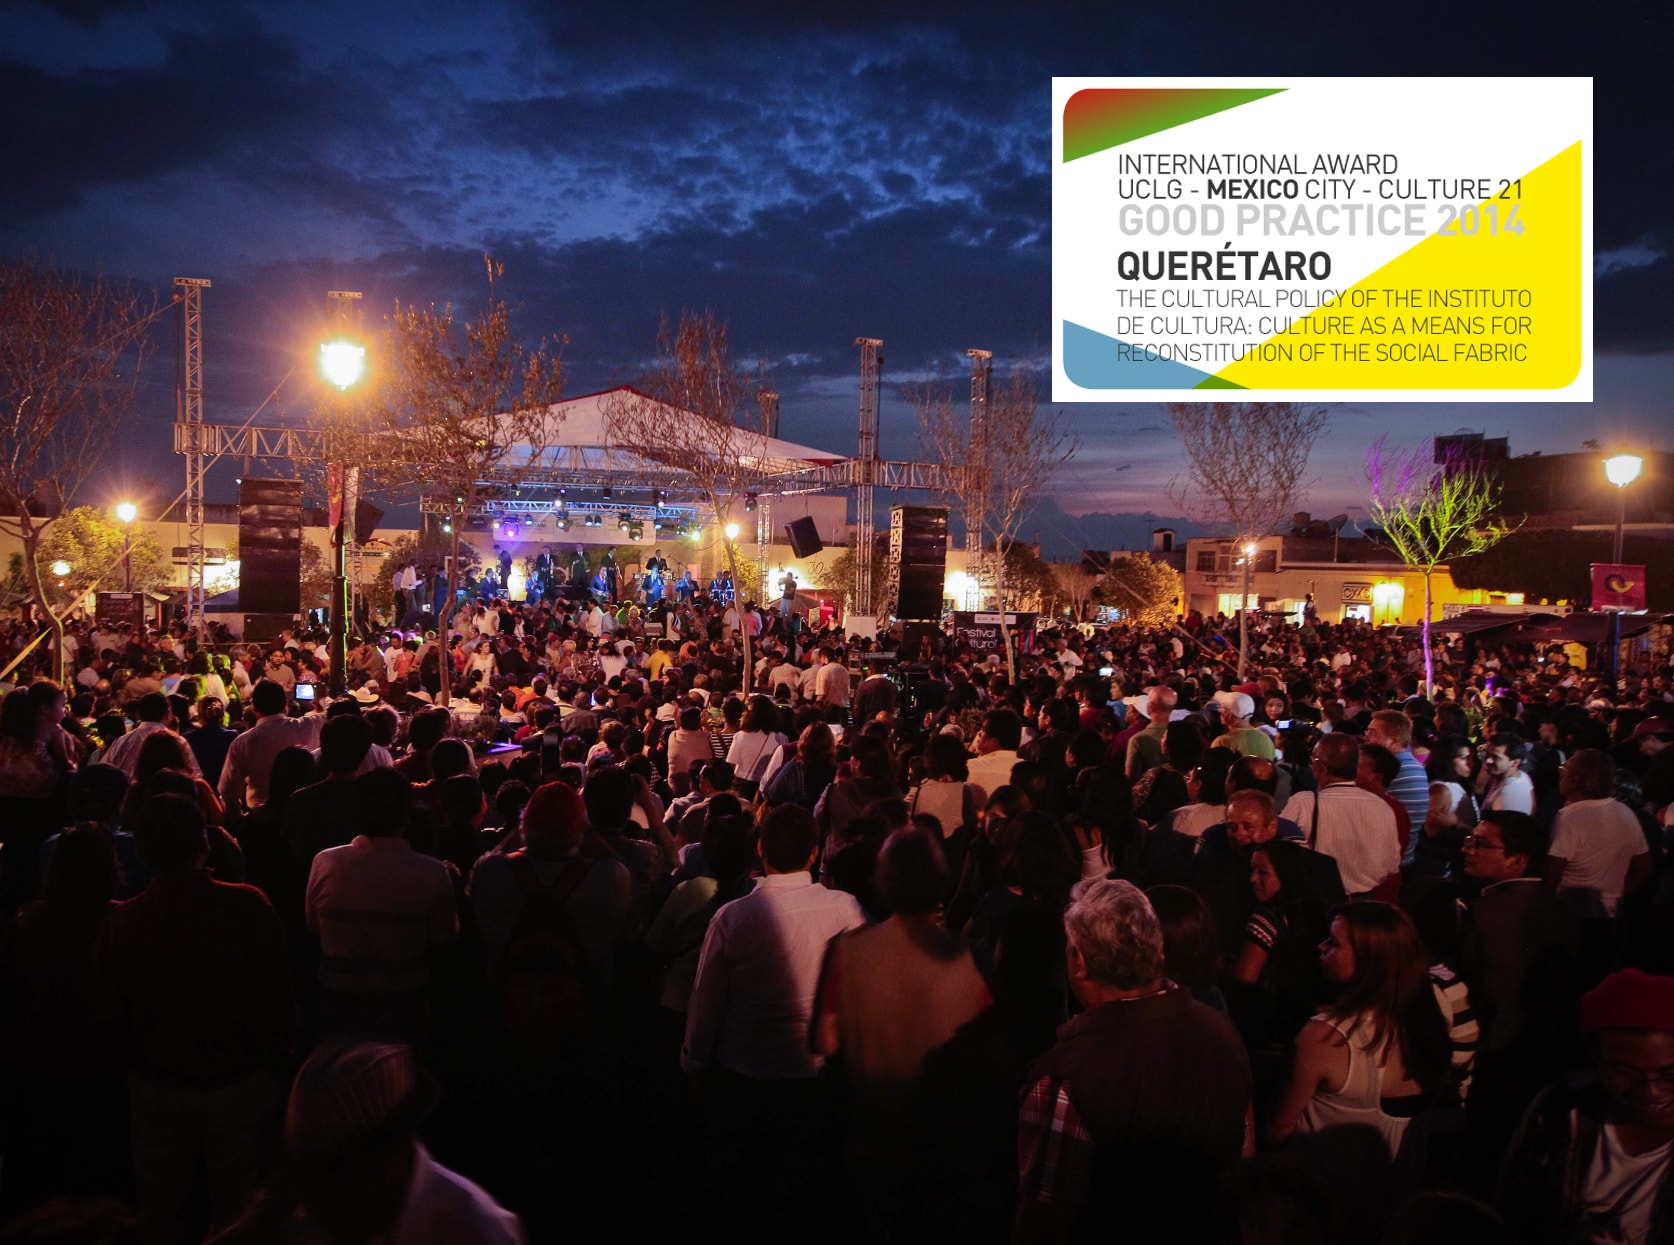 La cultura como medio para la reconstitución del tejido social, Querétaro